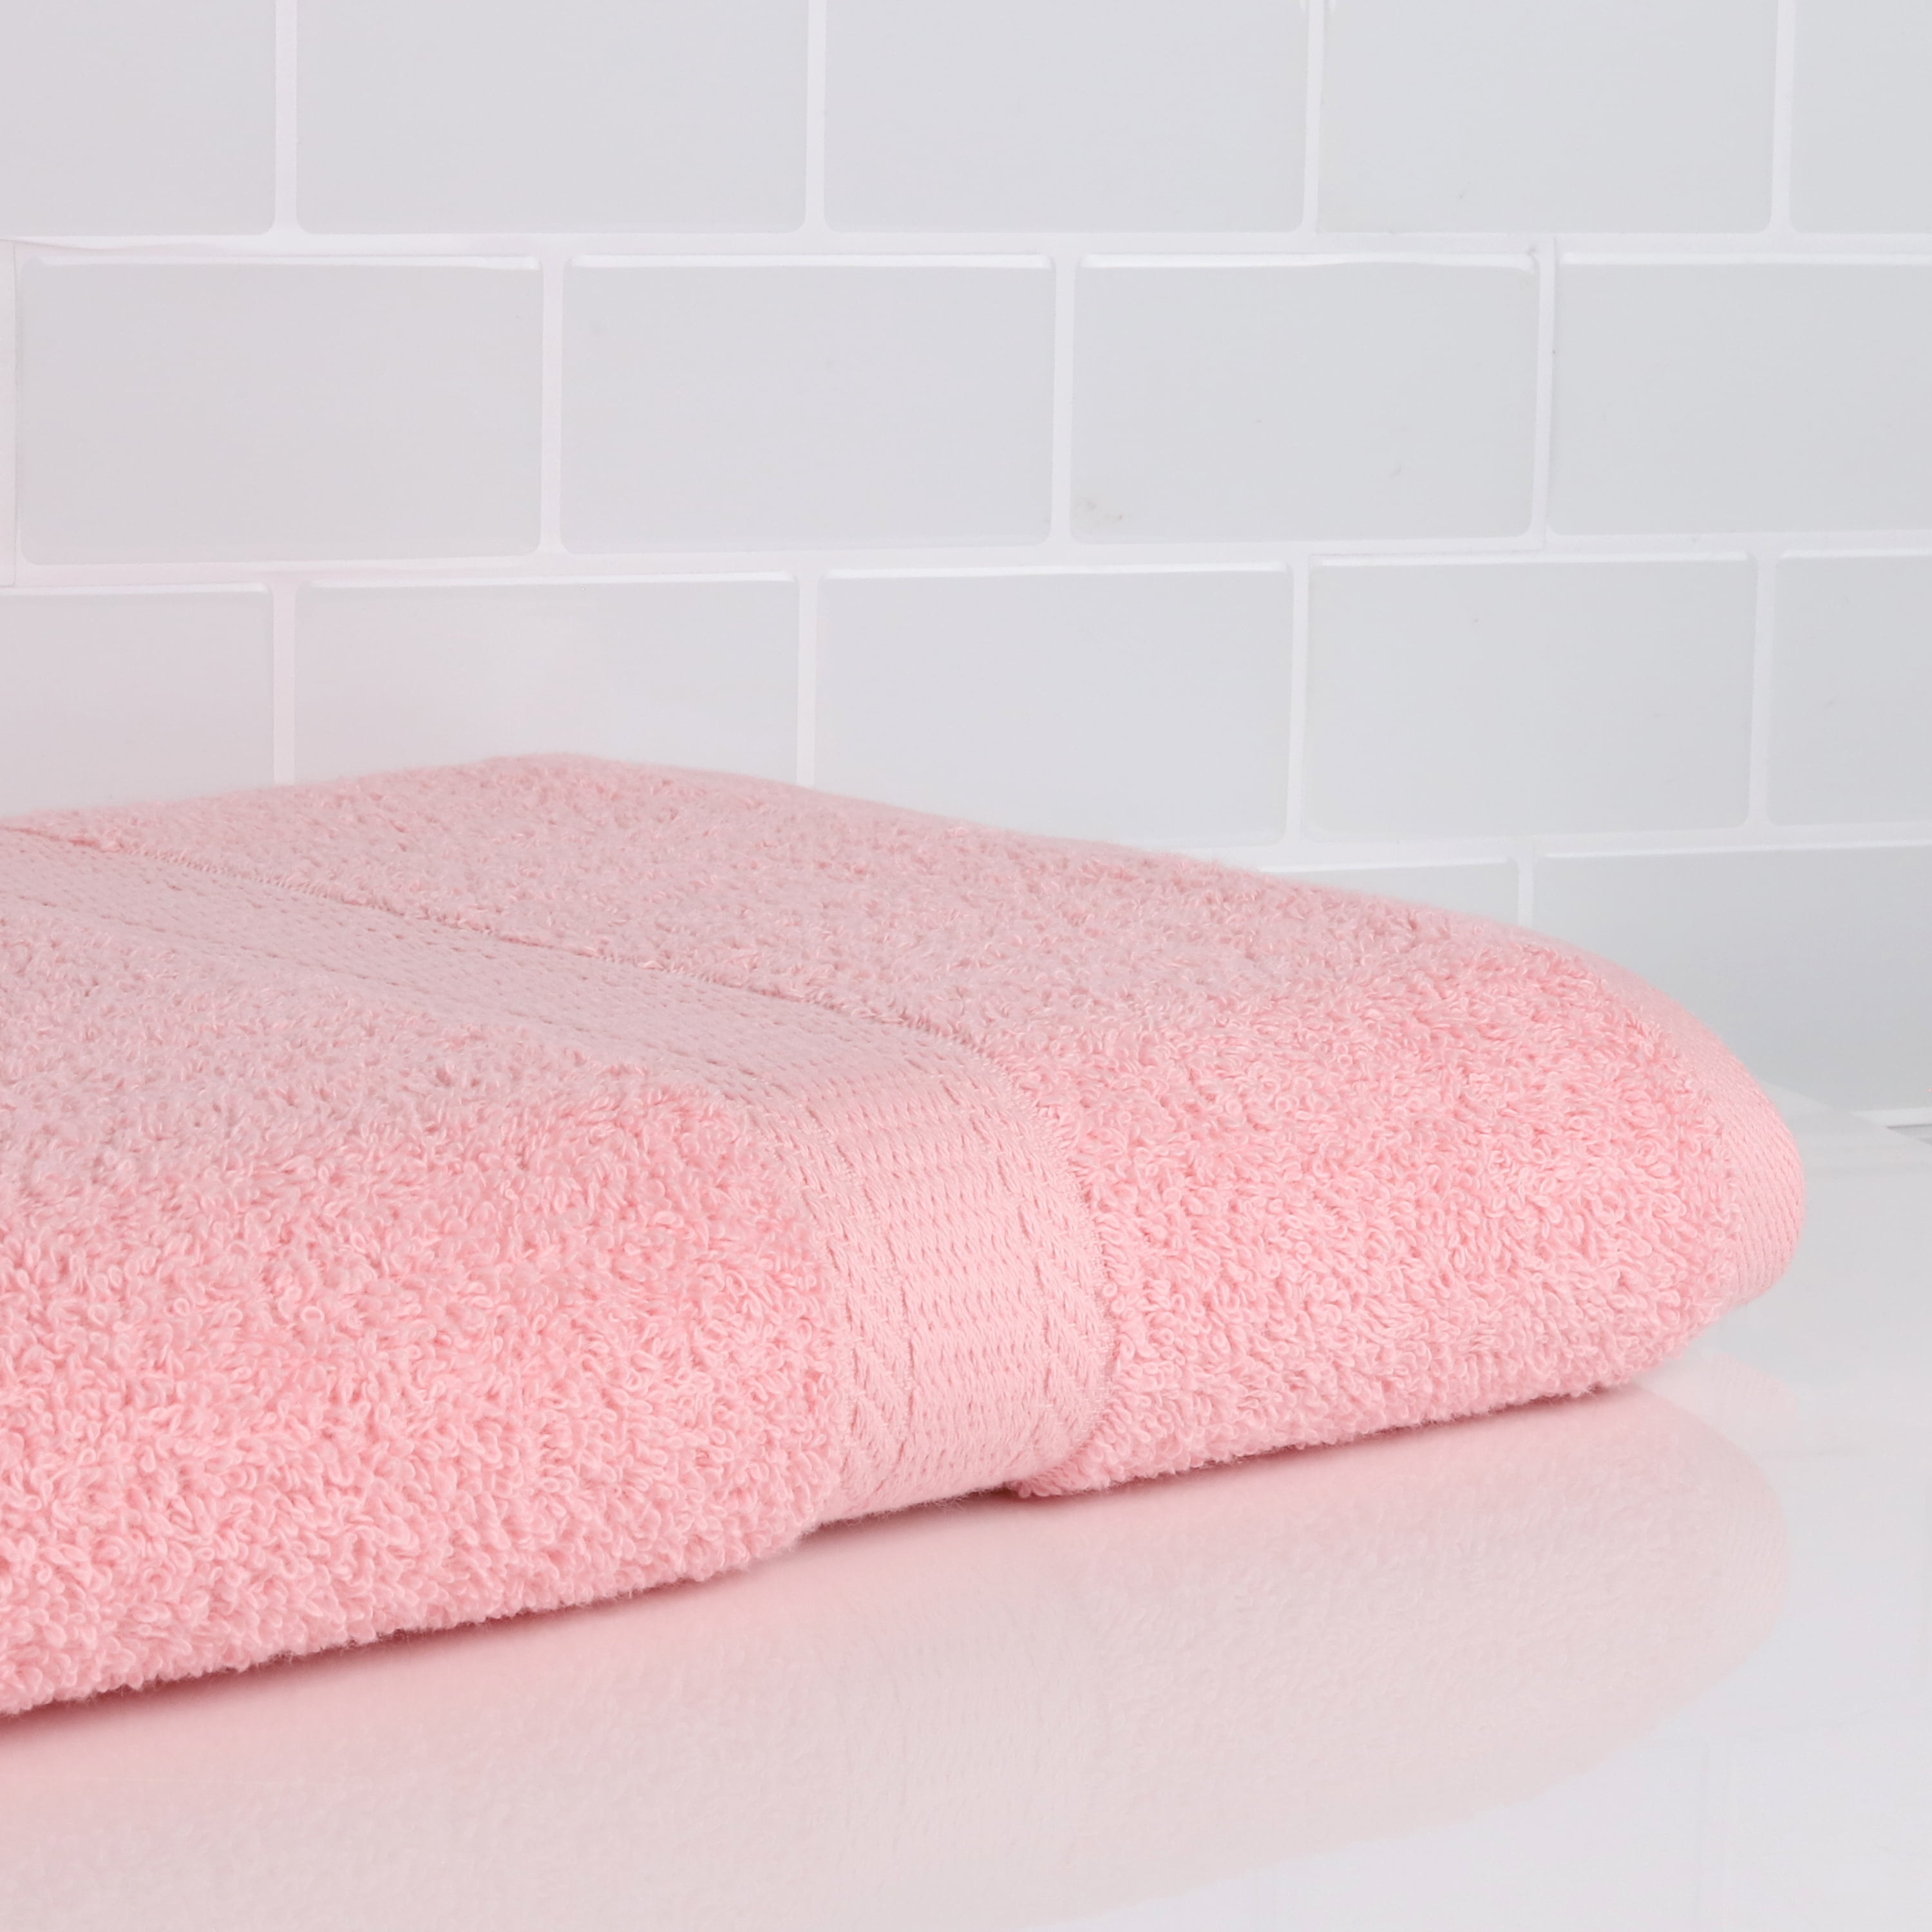 WELLDAY Pink Buffalo Plaid Bath Towels Soft Absorbent Bath Towels Bath  Towel Set of 3 for Home Hotel Bathroom Decor